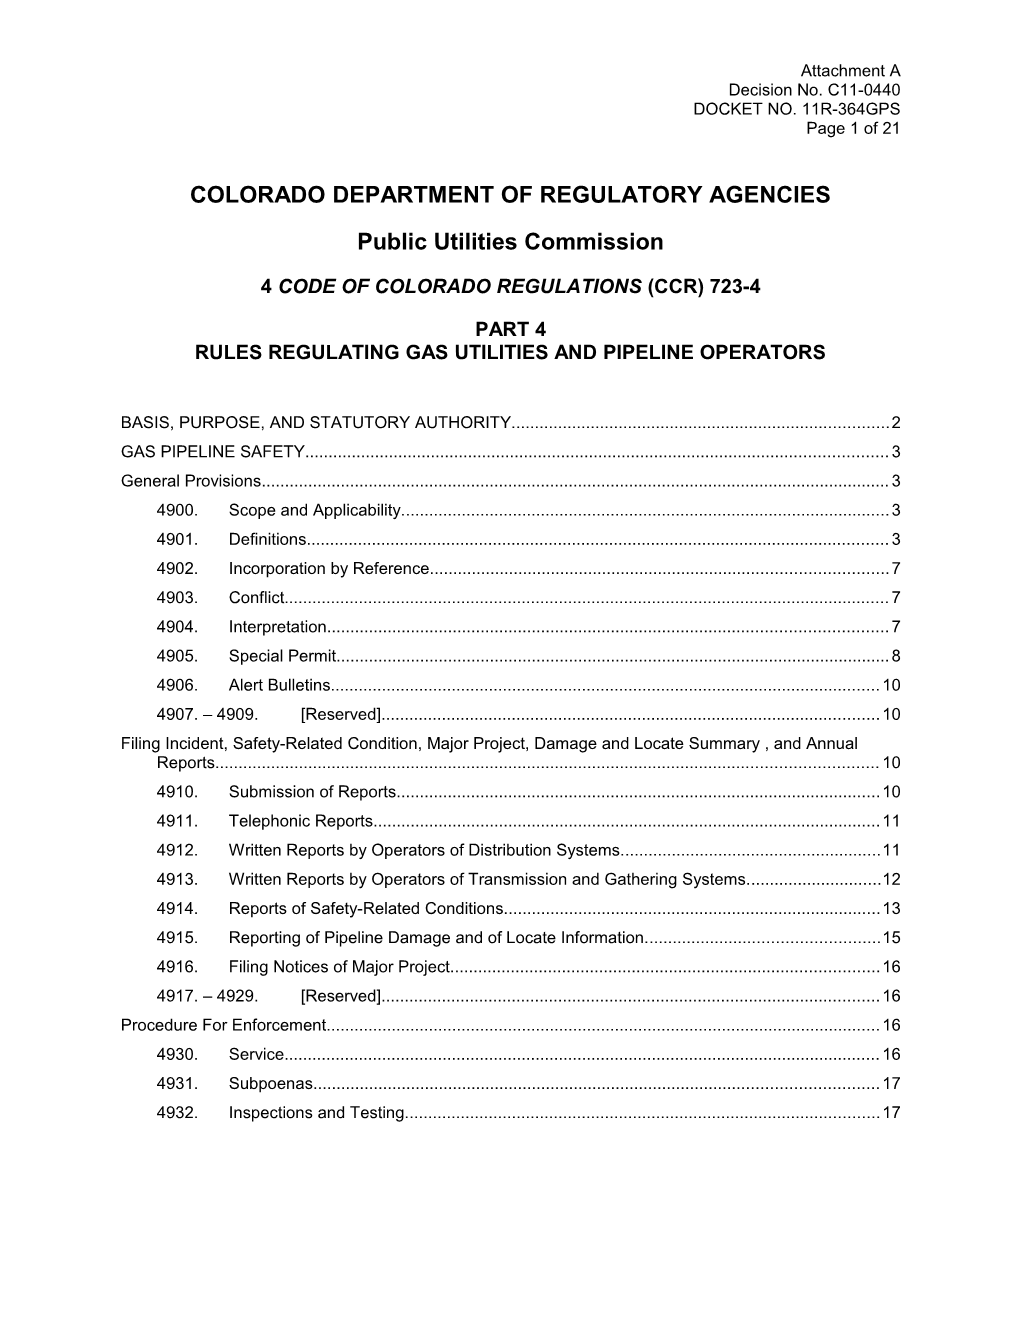 Colorado Department of Regulatory Agencies s2